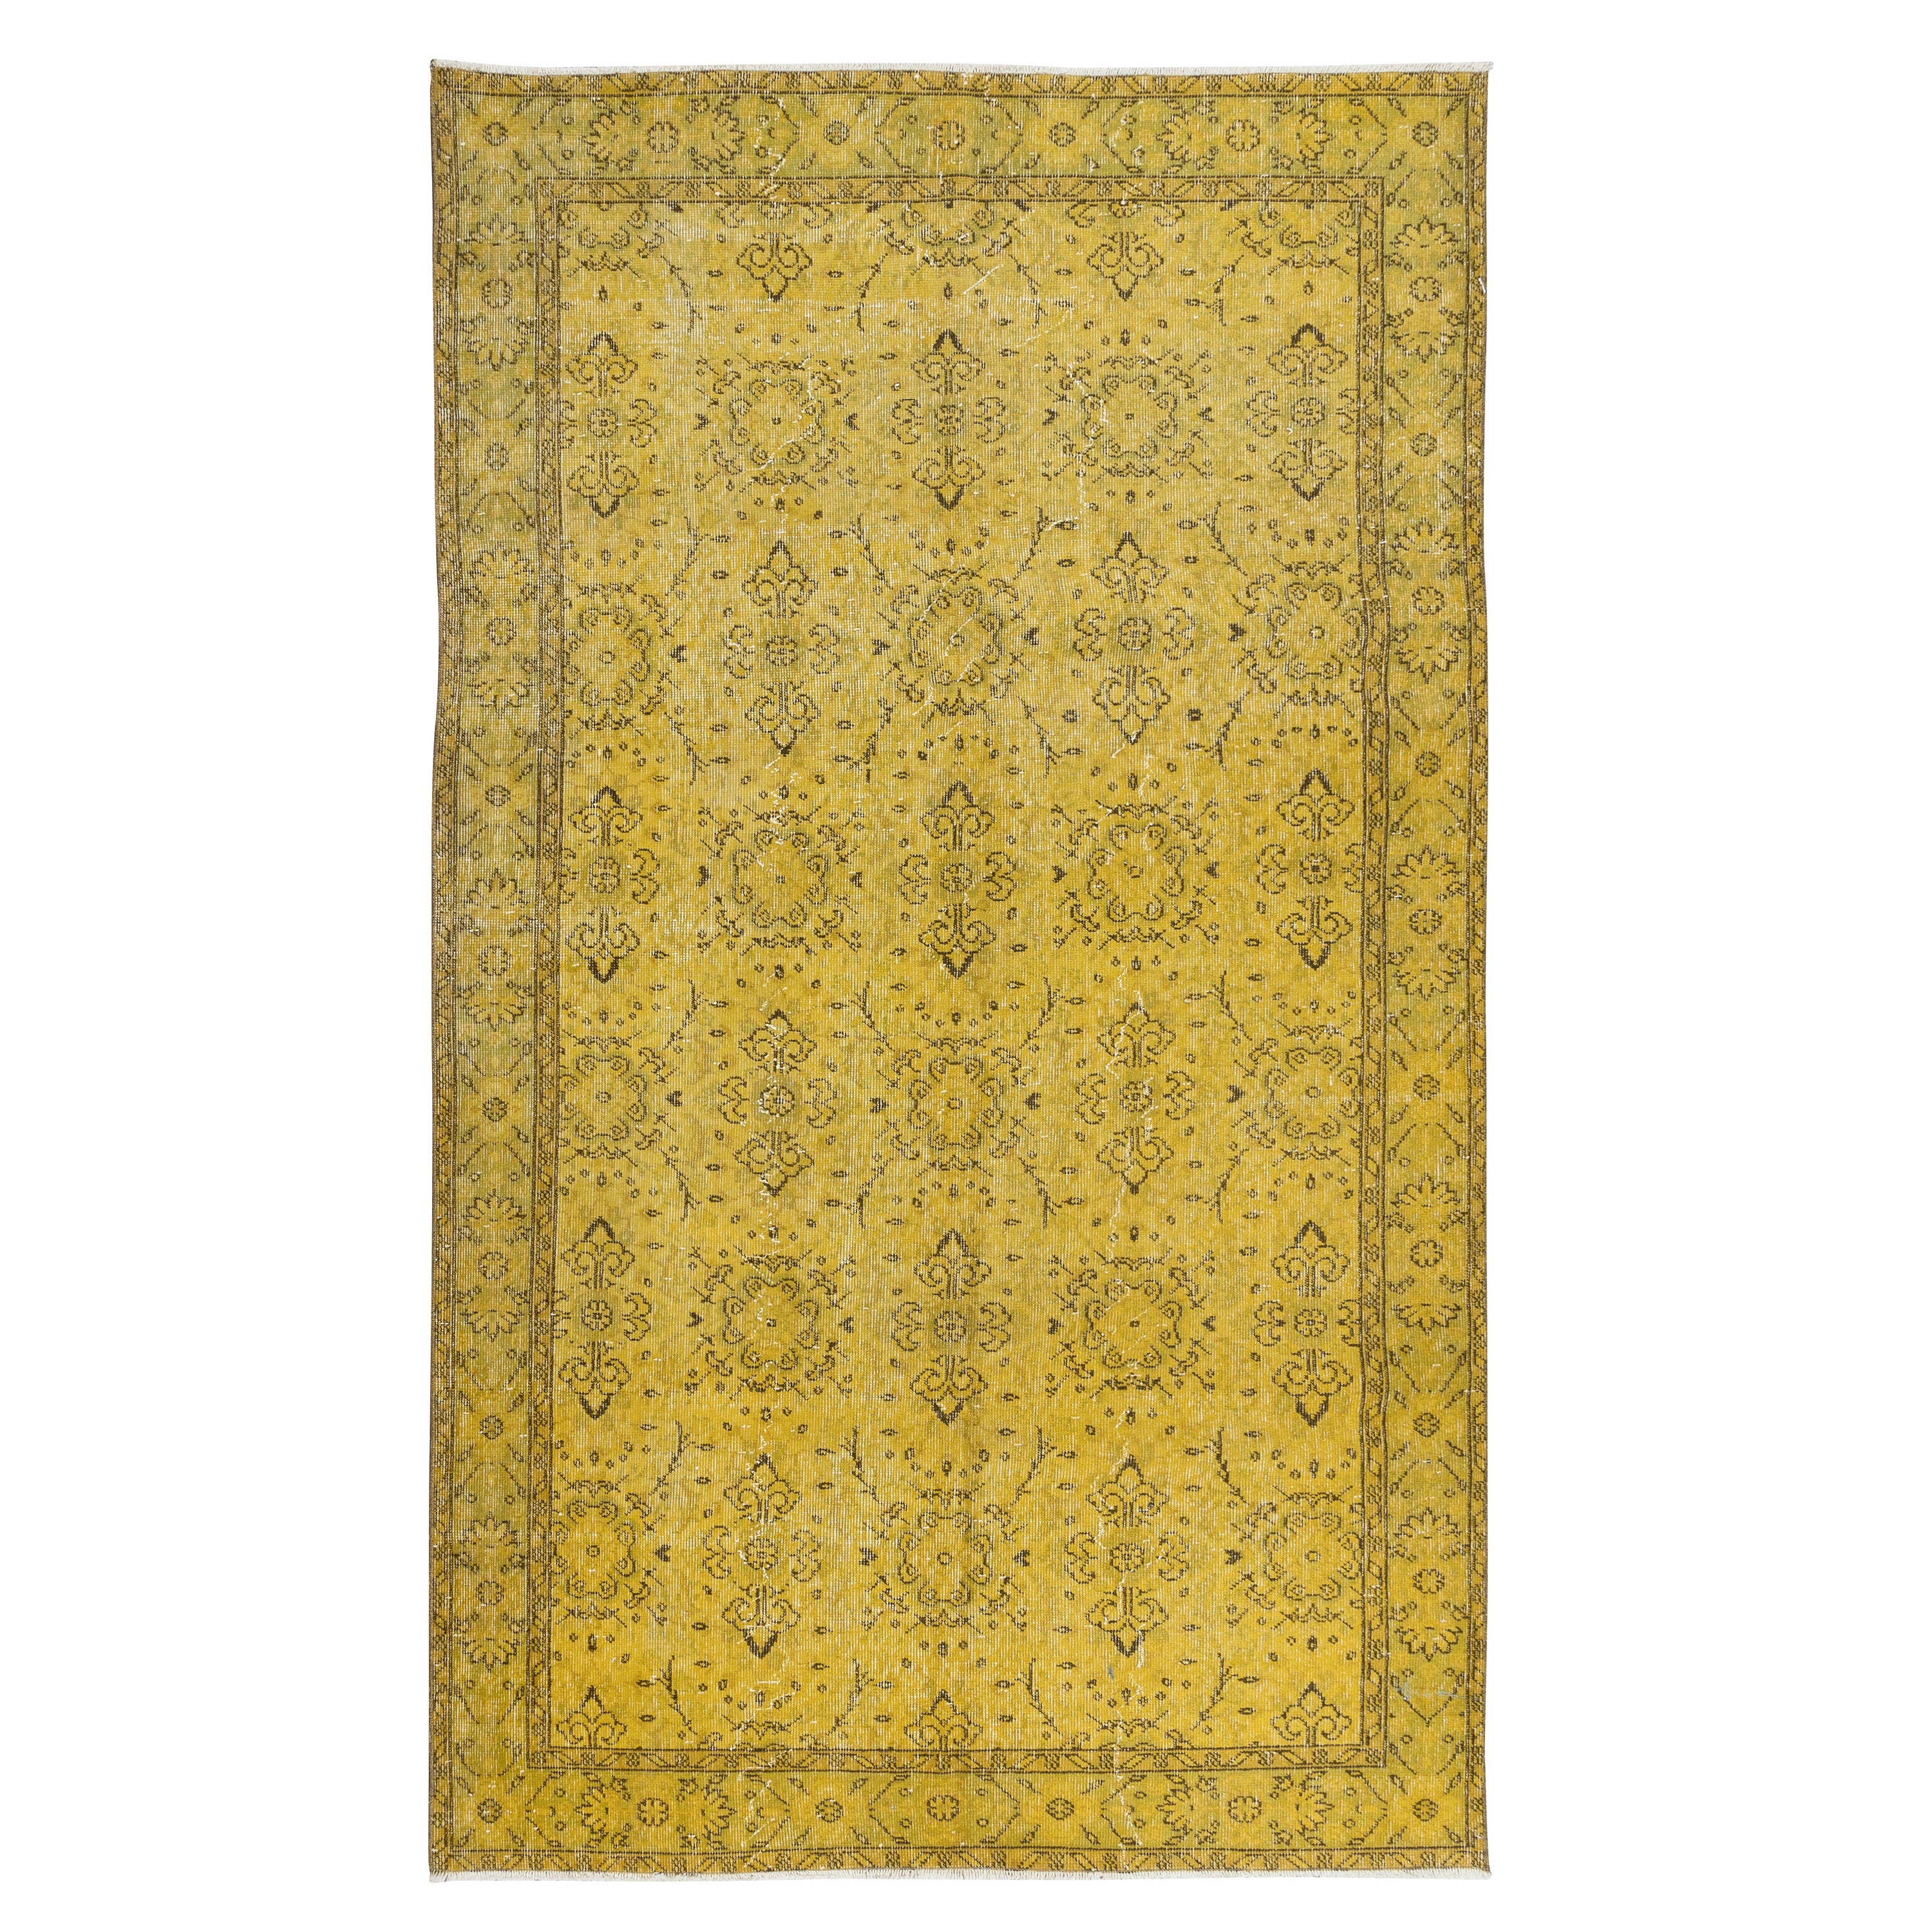 Moderner handgefertigter, geblümter türkischer Teppich, 5,5x9,5 Ft, gelber, upcycelter Teppich